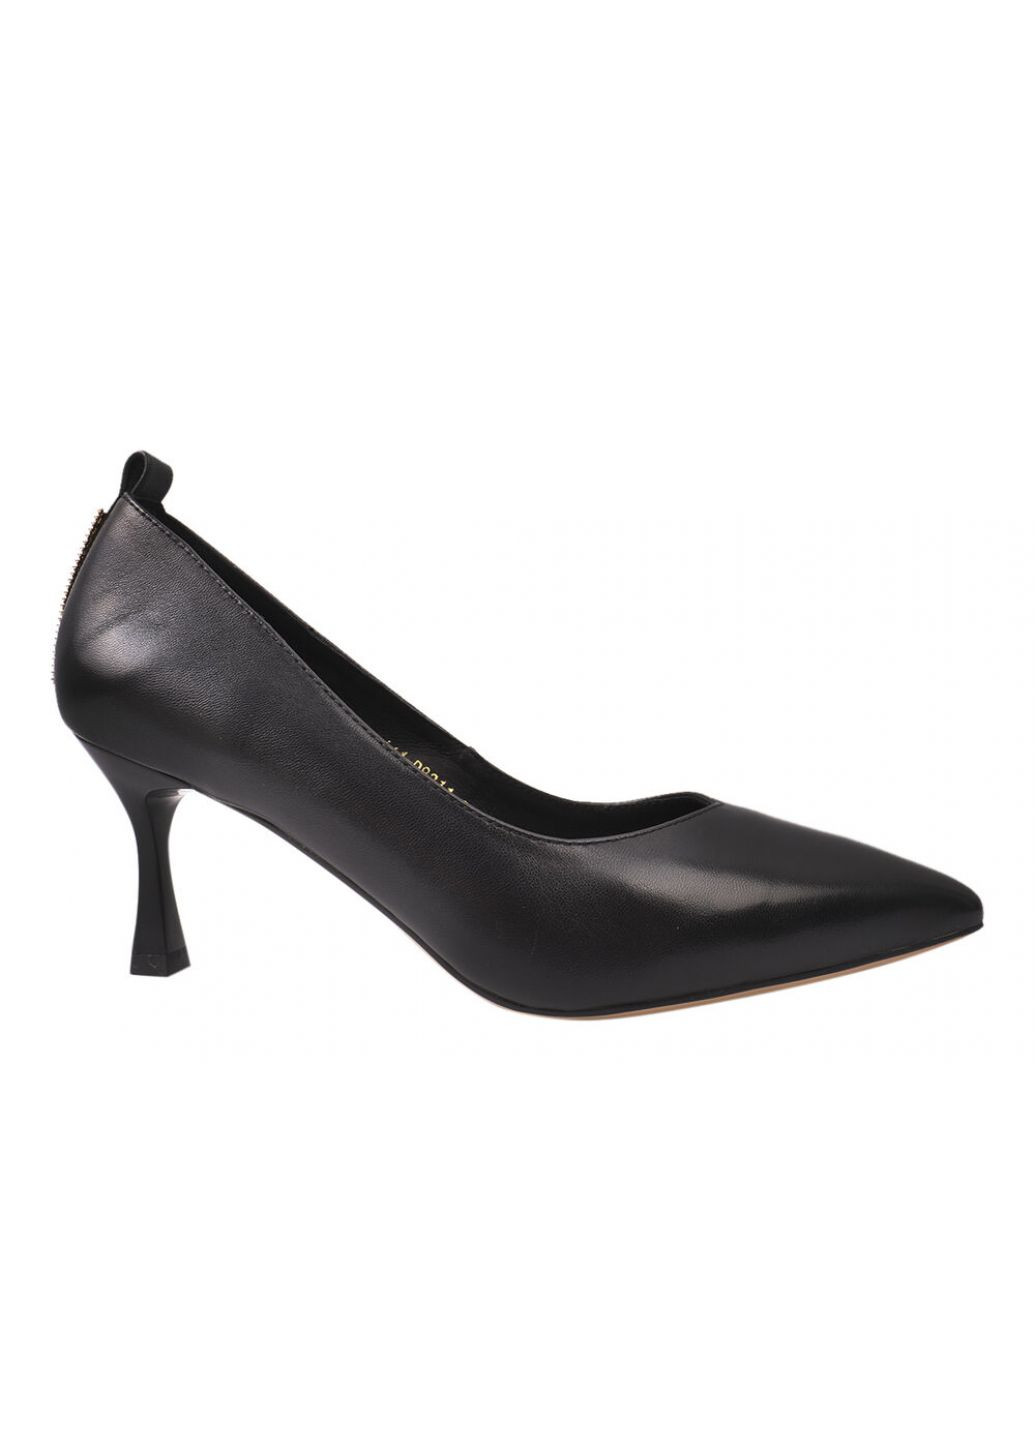 Туфлі жіночі з натуральної шкіри, на шпильці, чорні, Selliveno 2-21dt (257429235)